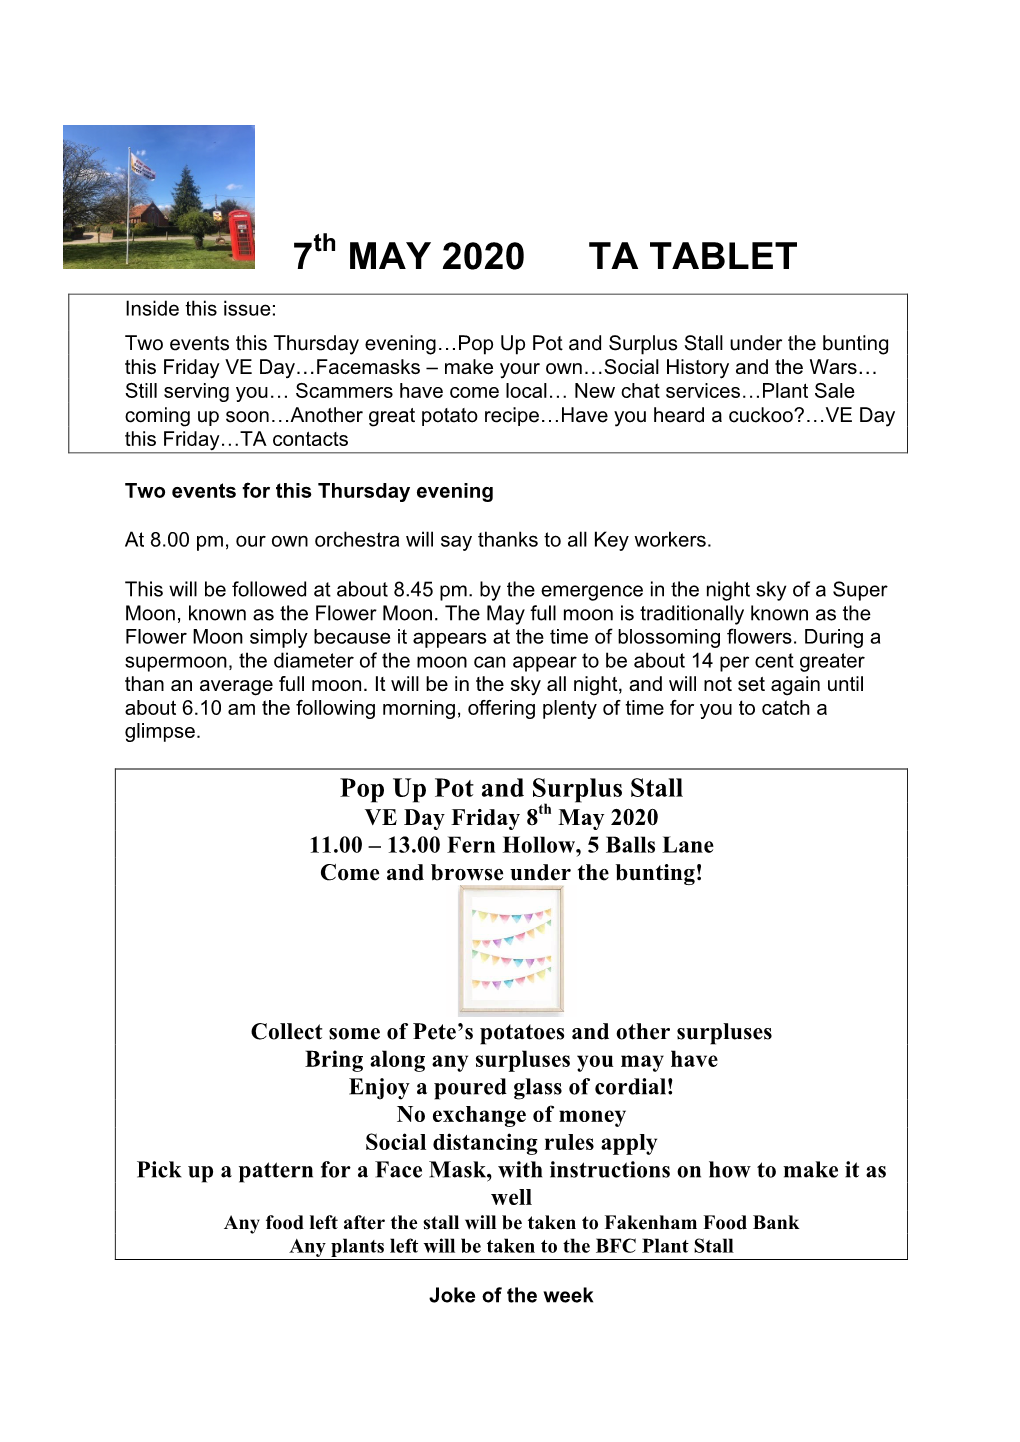 TA Tablet 7Th May 2020